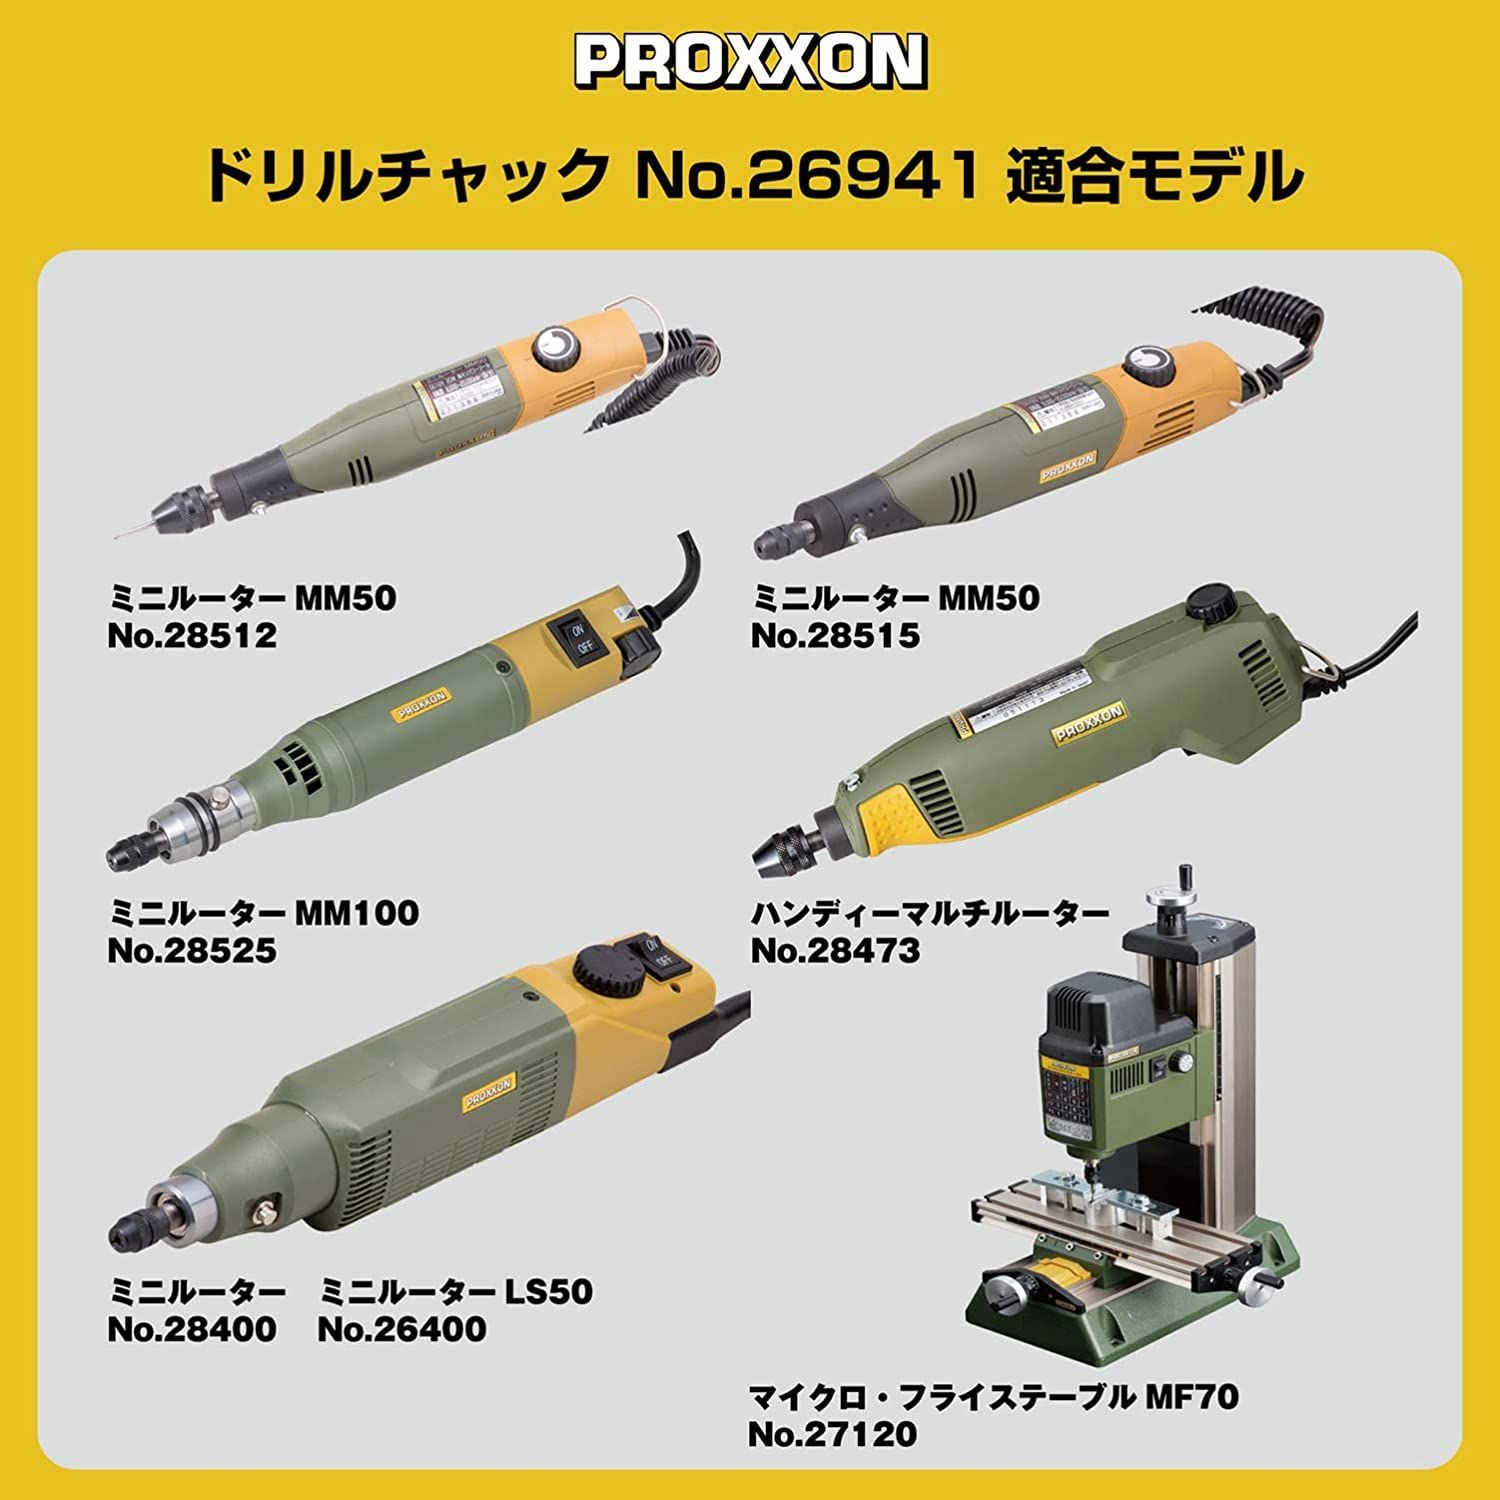 プロクソン(PROXXON) ミニルーターMM100 - その他